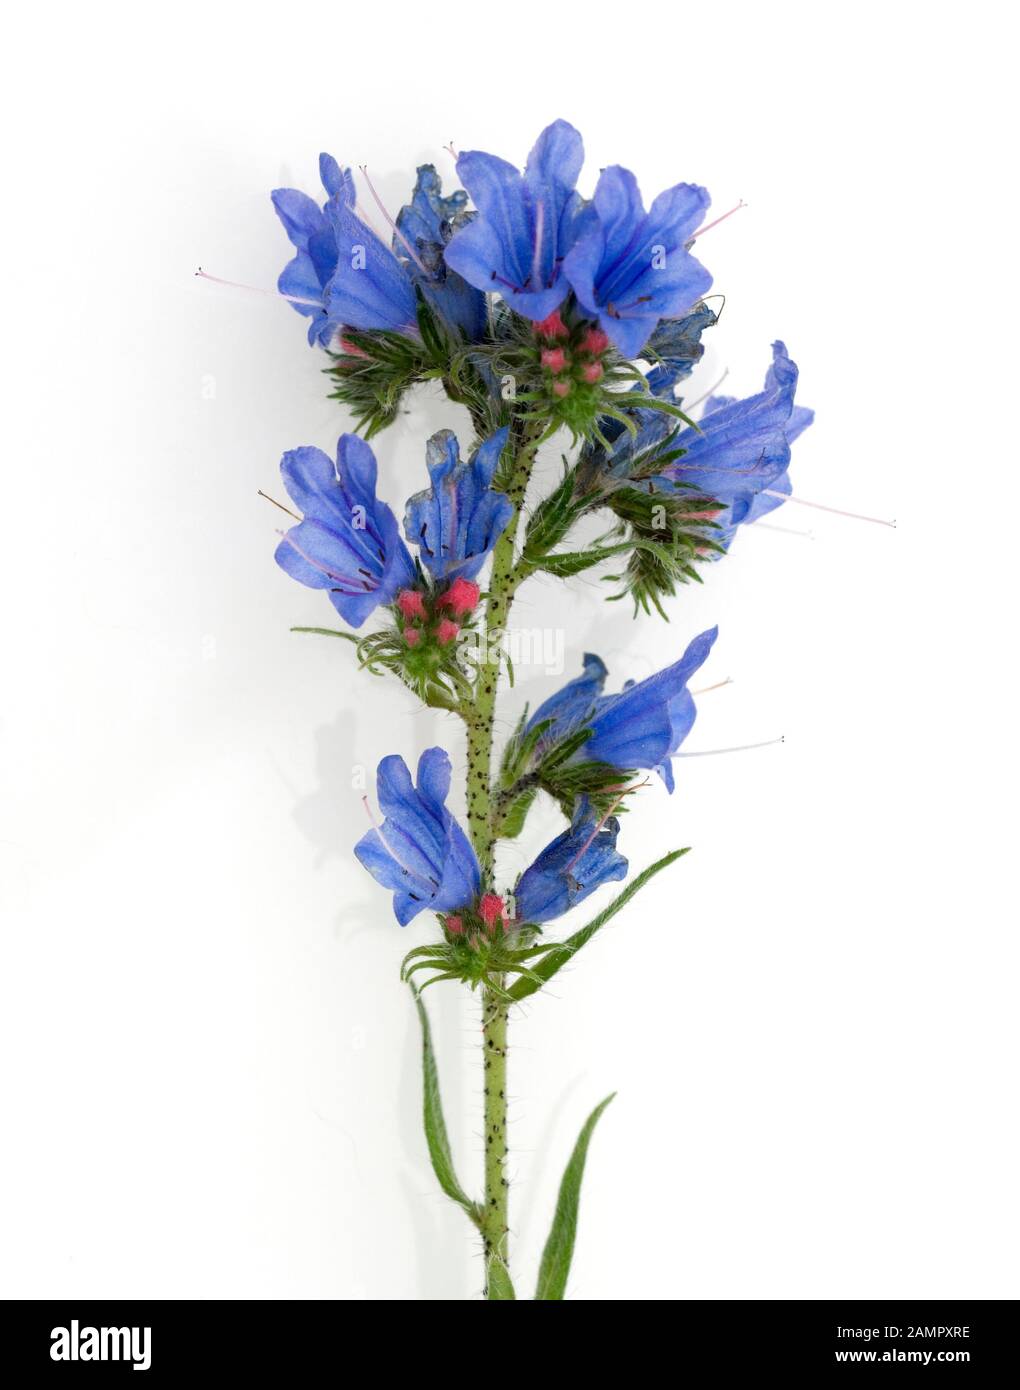 Natternkopf, Echium vulgare, ist eine gute Heil- und Medizinalpflanze und mit blauen Blauen. Schlangenkopf Echium vulgare ist ein wichtiges medicina Stockfoto